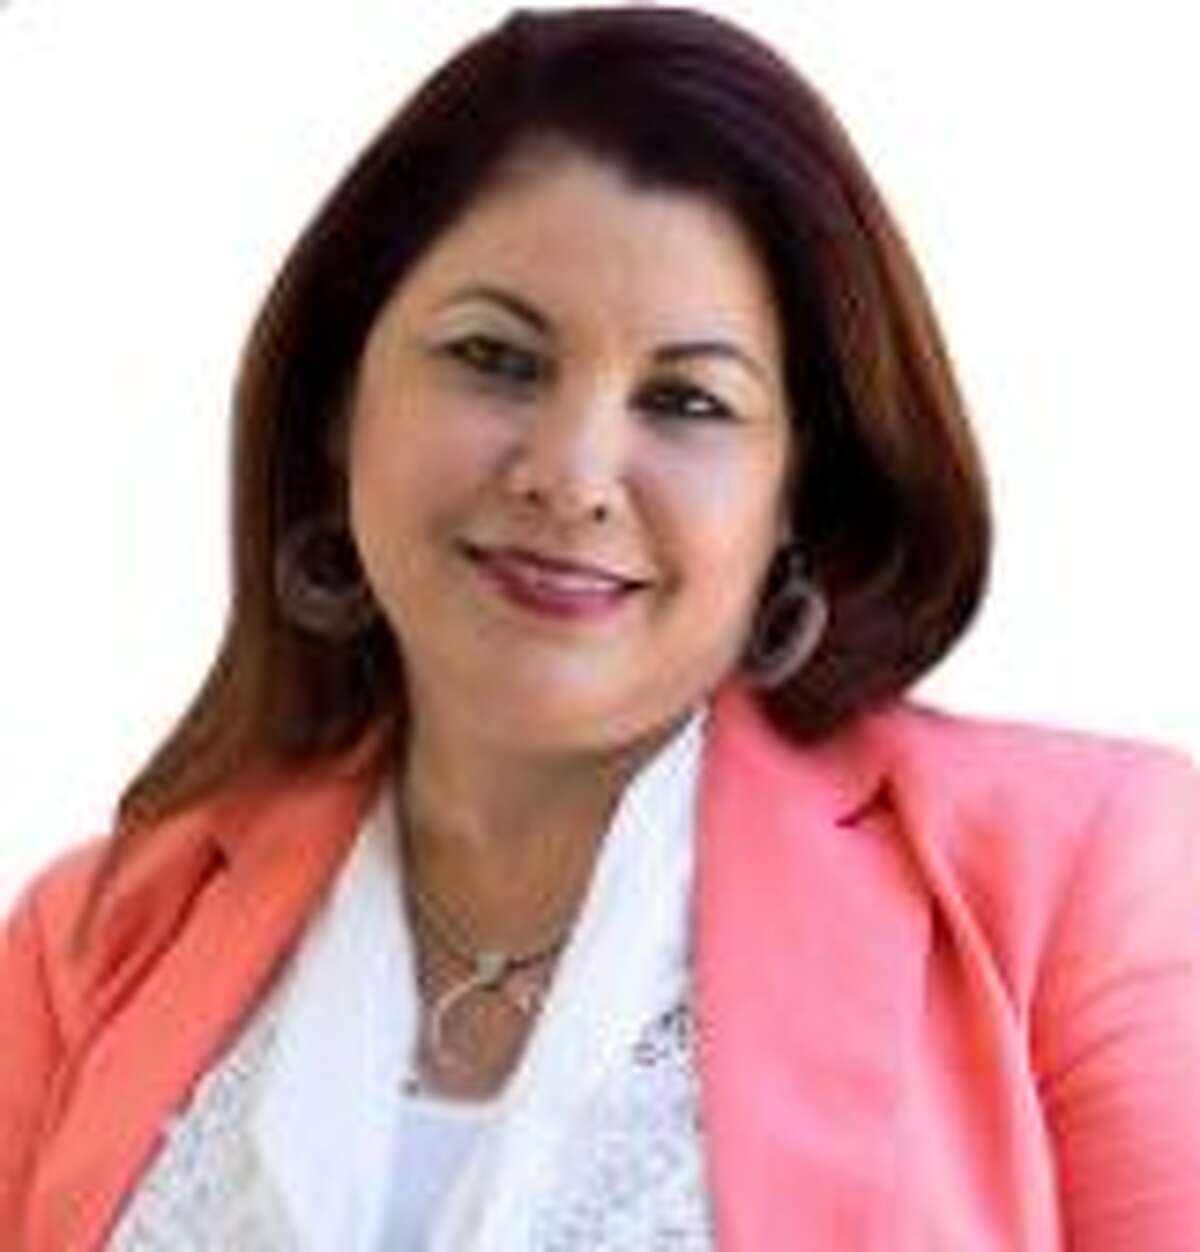 Luz Martinez 